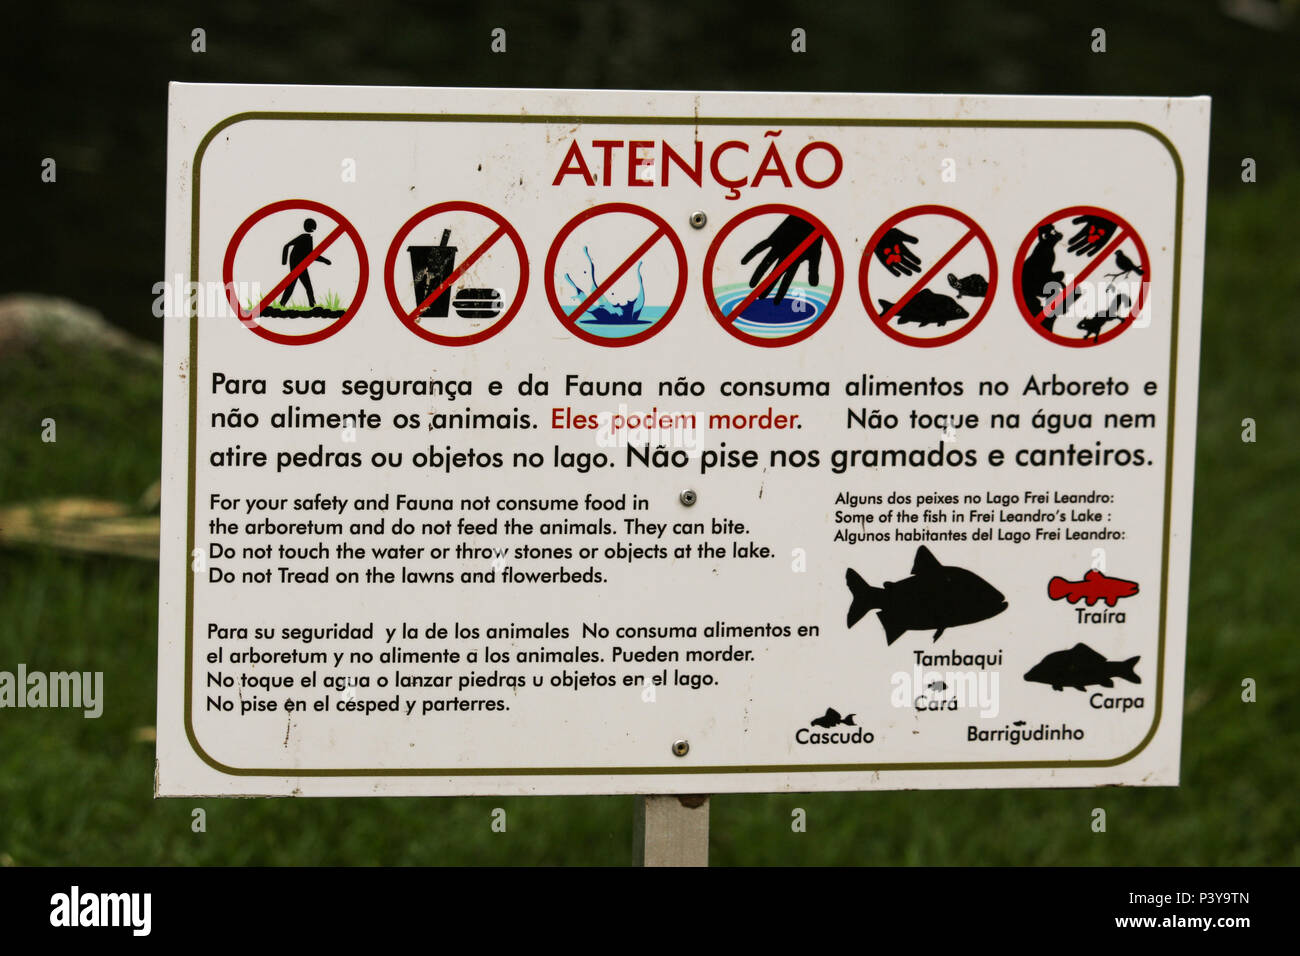 La plaza com advertências de preservação do Meio Ambiente, em el parque do Rio de Janeiro. Foto de stock